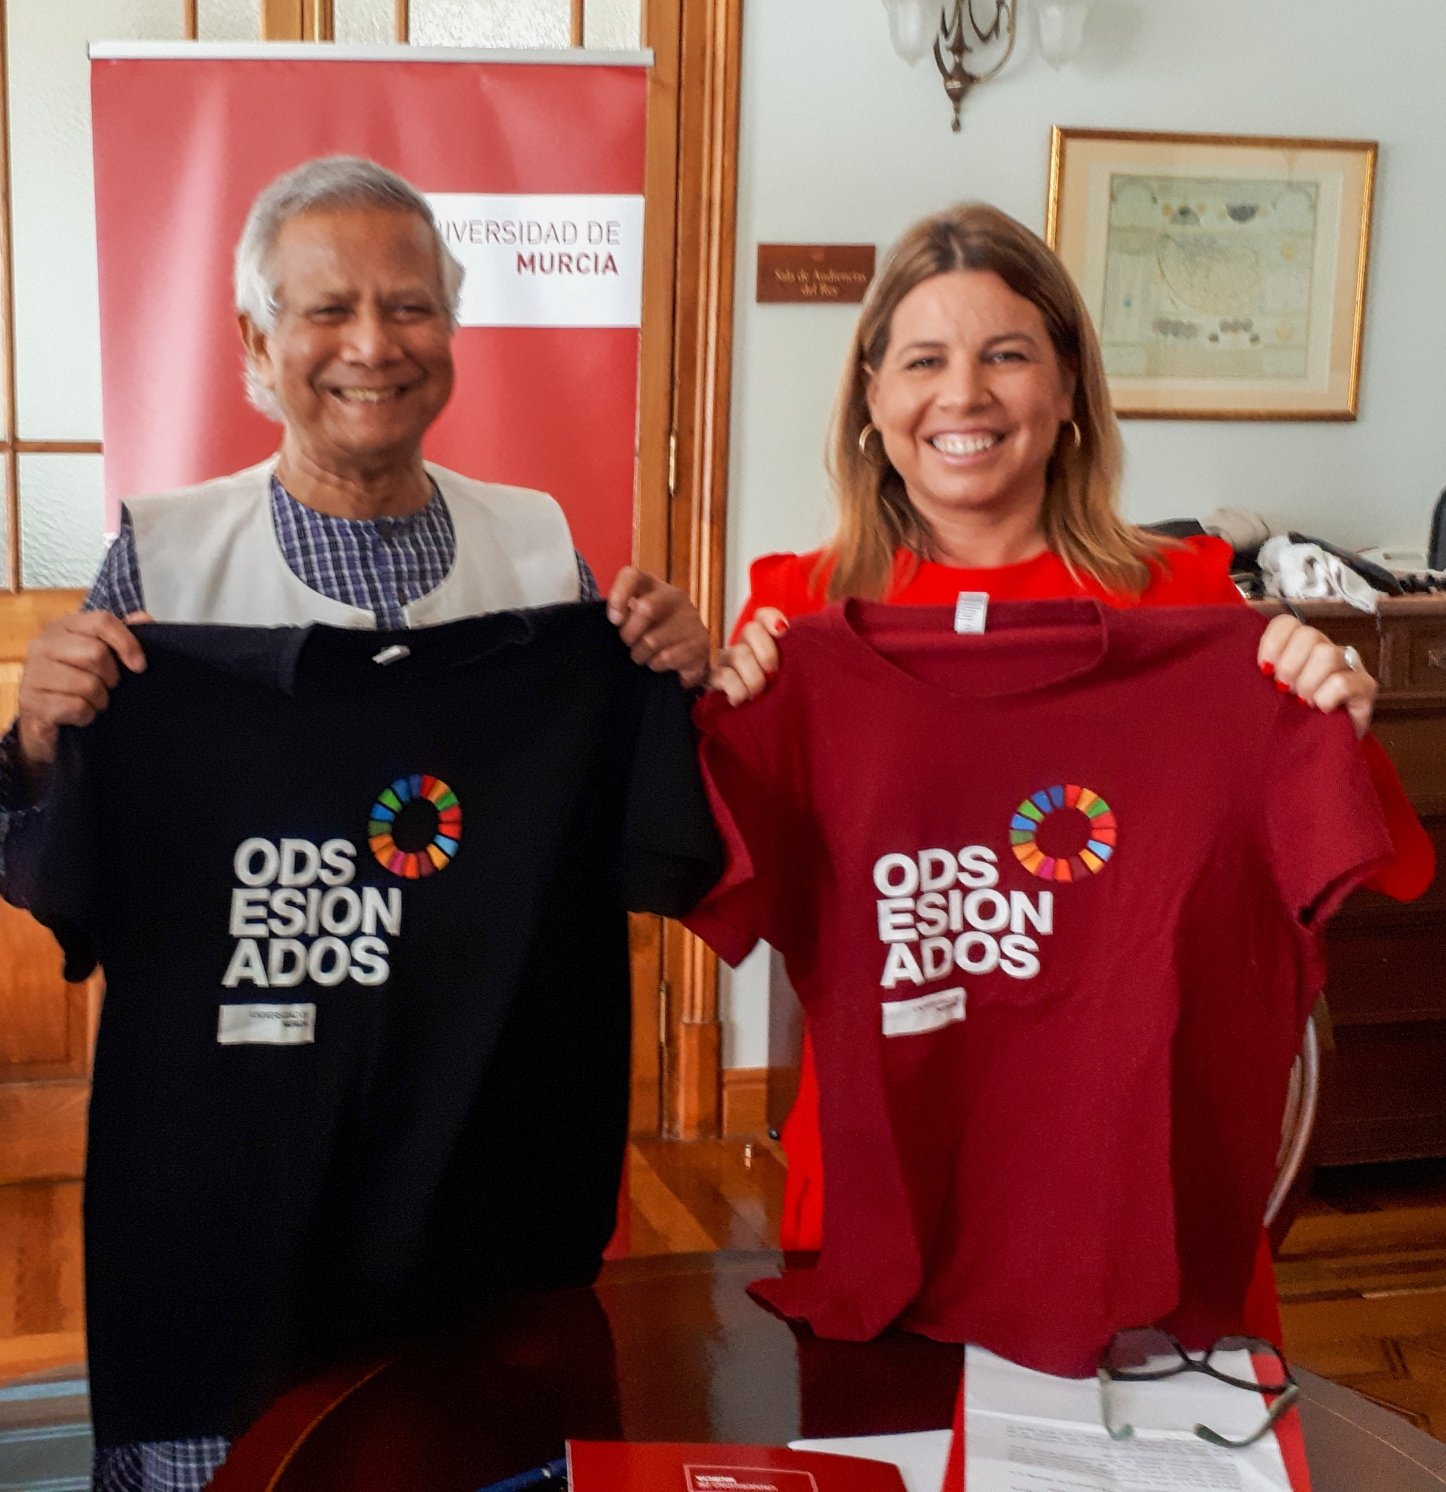 Muhhamad Yunus, premio Nobel de la Paz, posa con una camiseta del proyecto ODSesiones de la Universidad de Murcia